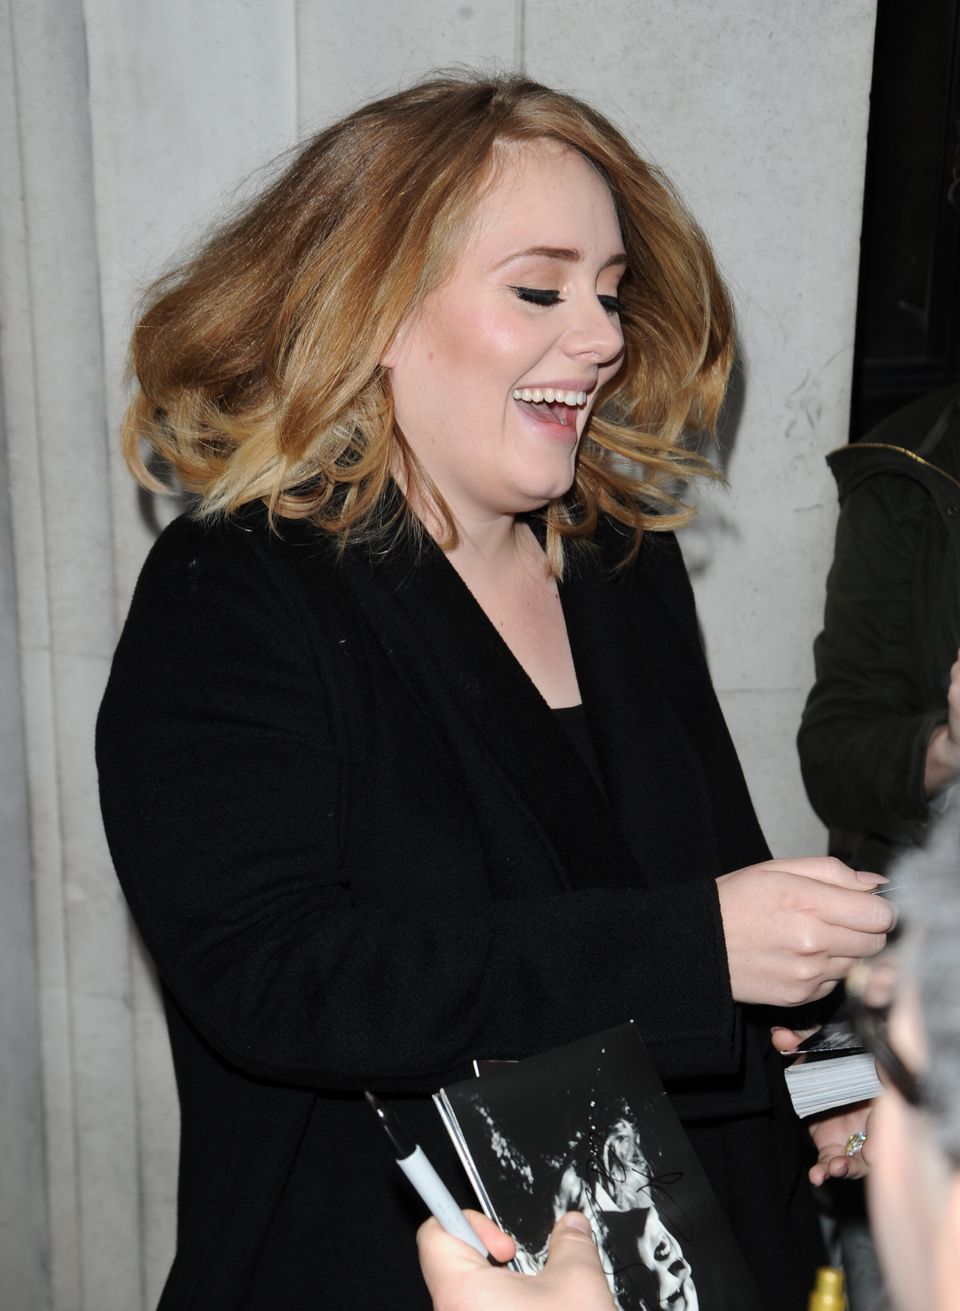 Regresó Adele para decir 'Hello' cantando | HuffPost Voices